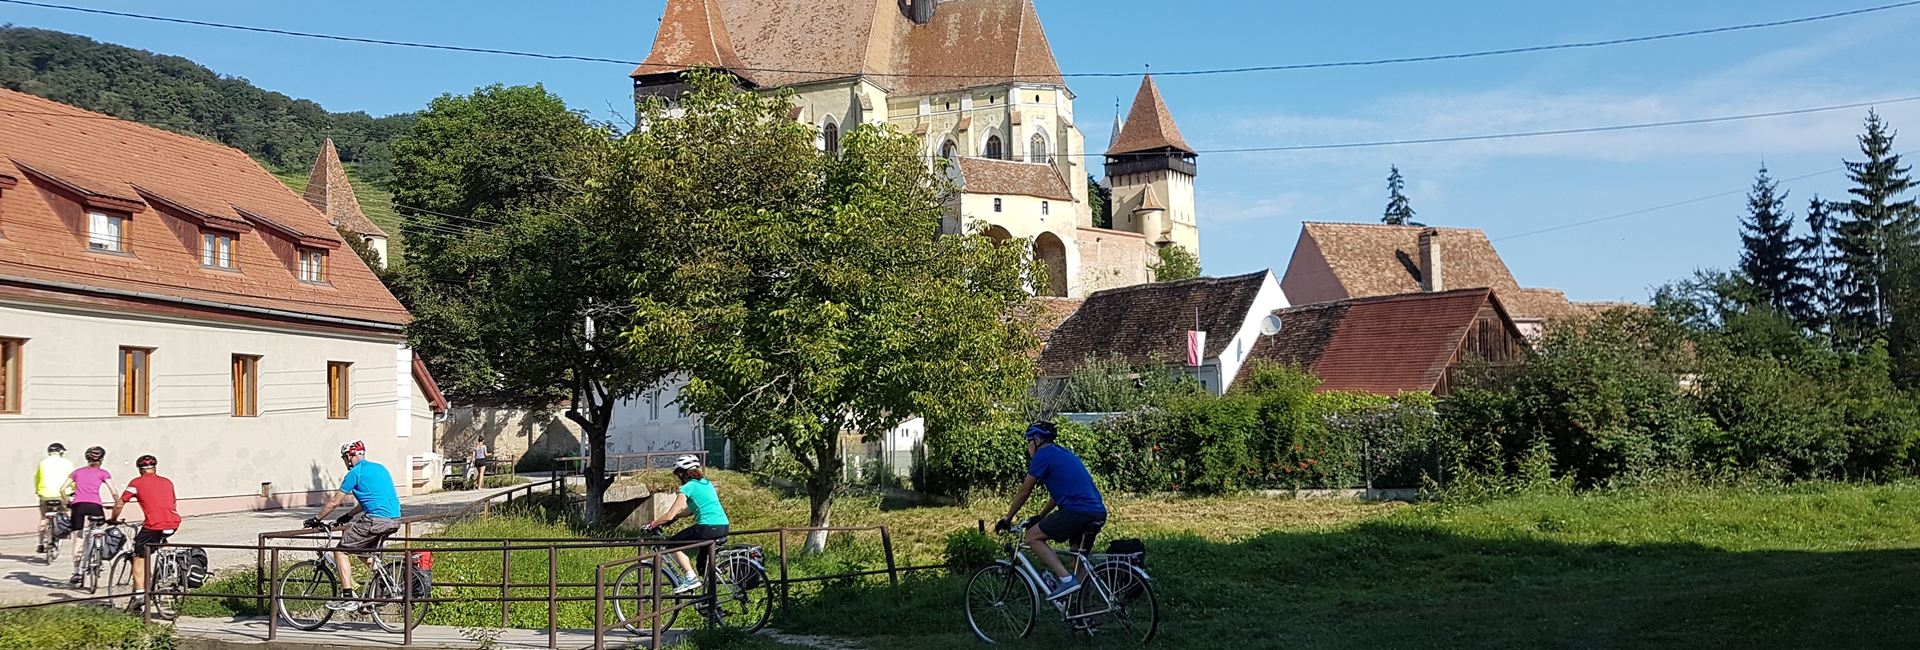 Tură autoghidată cu bicicleta prin satele săsești pe bicicletă